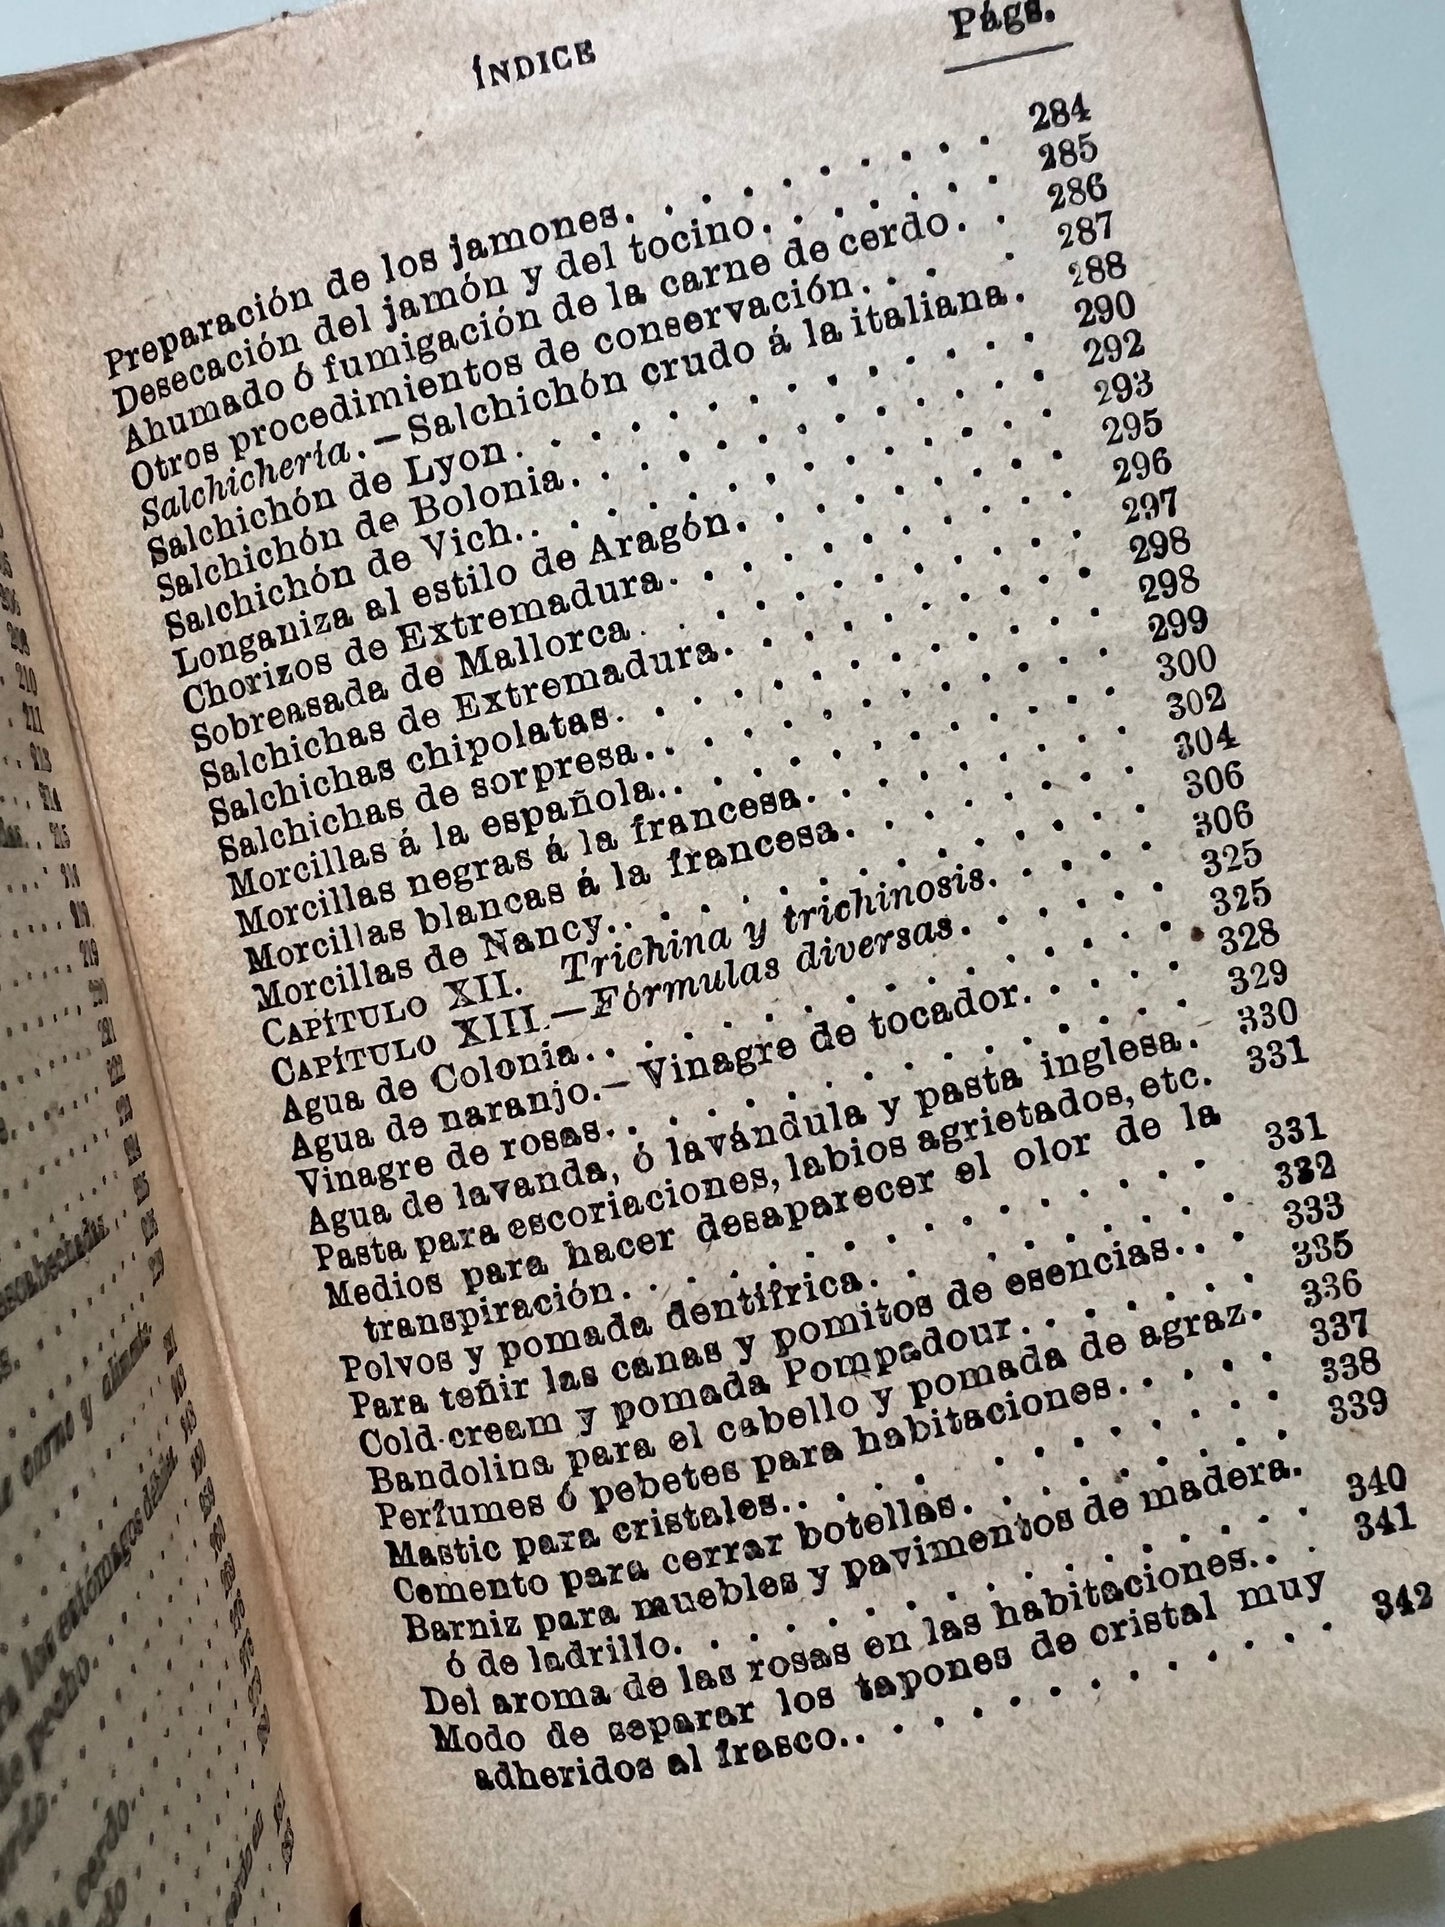 La higiene y la economía en la vida práctica. Guía del ama de casa - Saturnino Calleja, ca. 1915